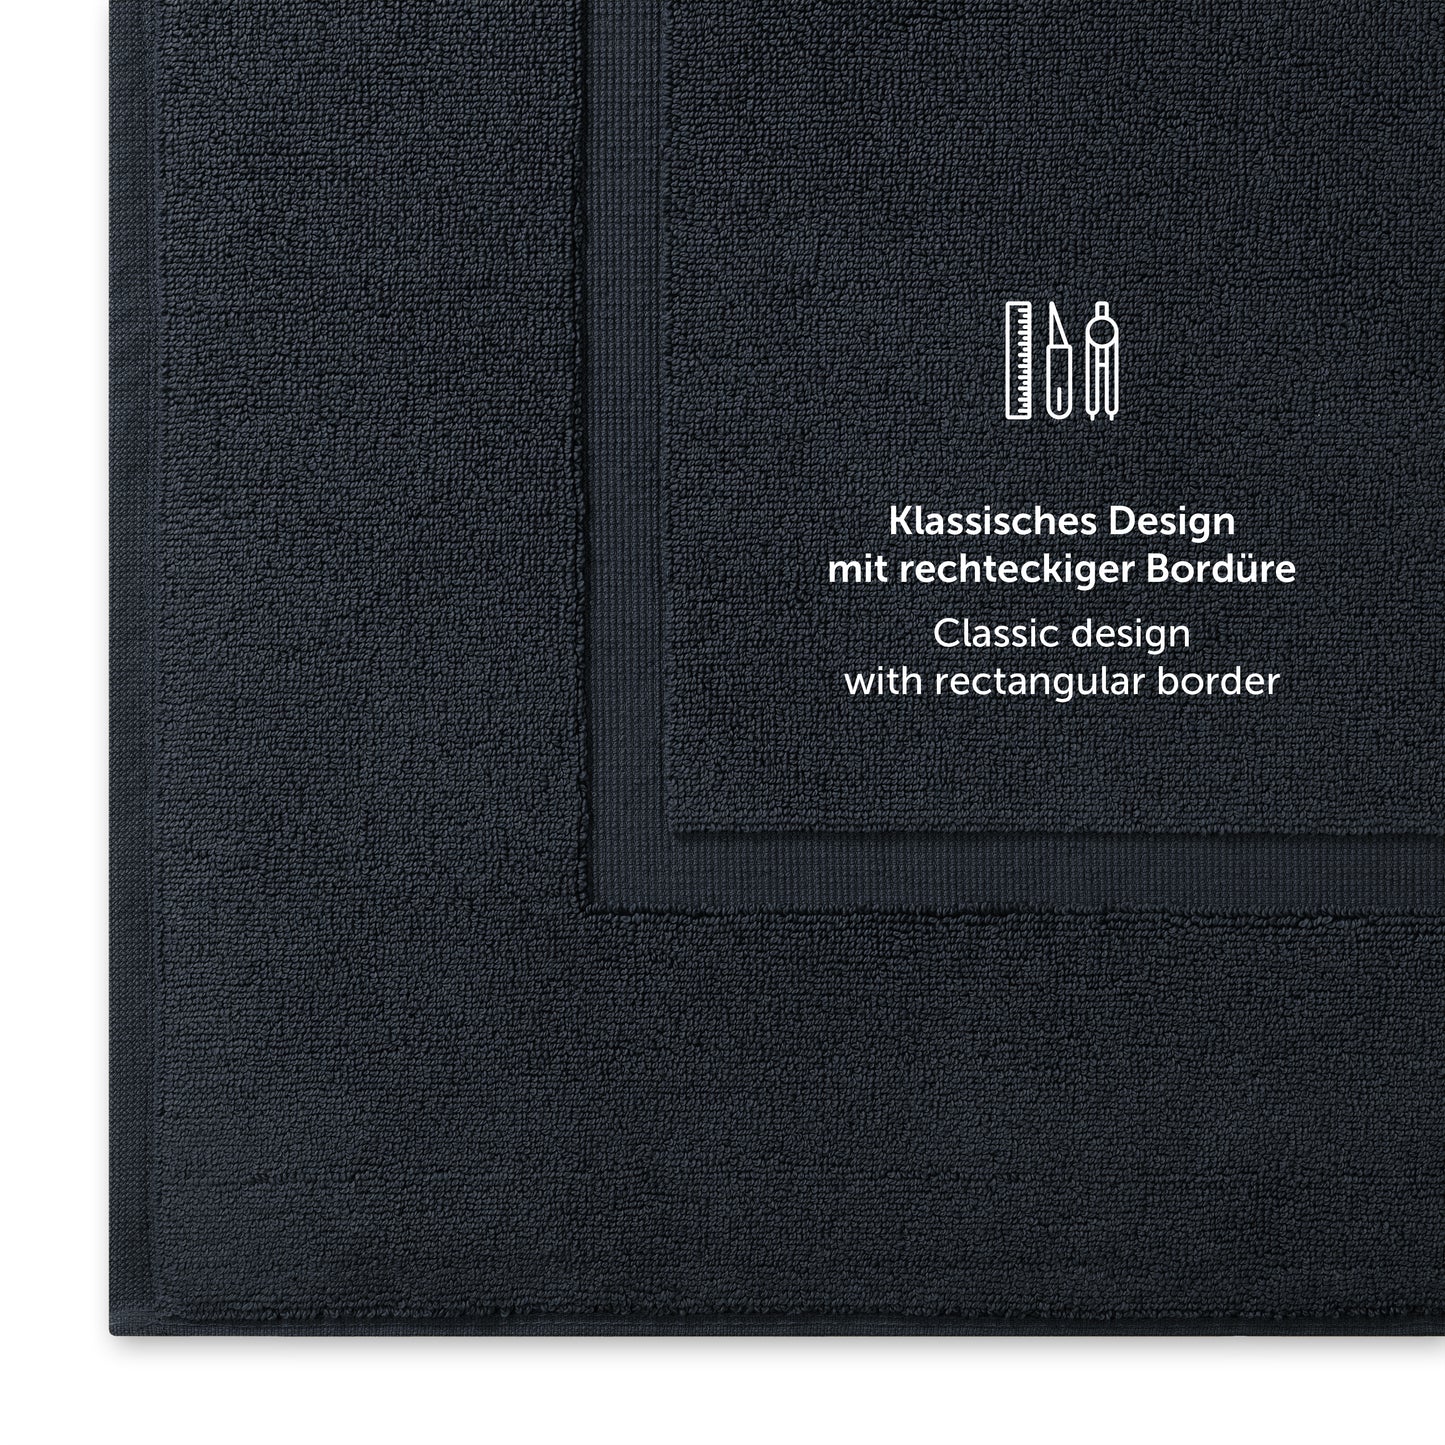 Dunkelblaues Handtuch mit klassischem Design und Bordürendetail.